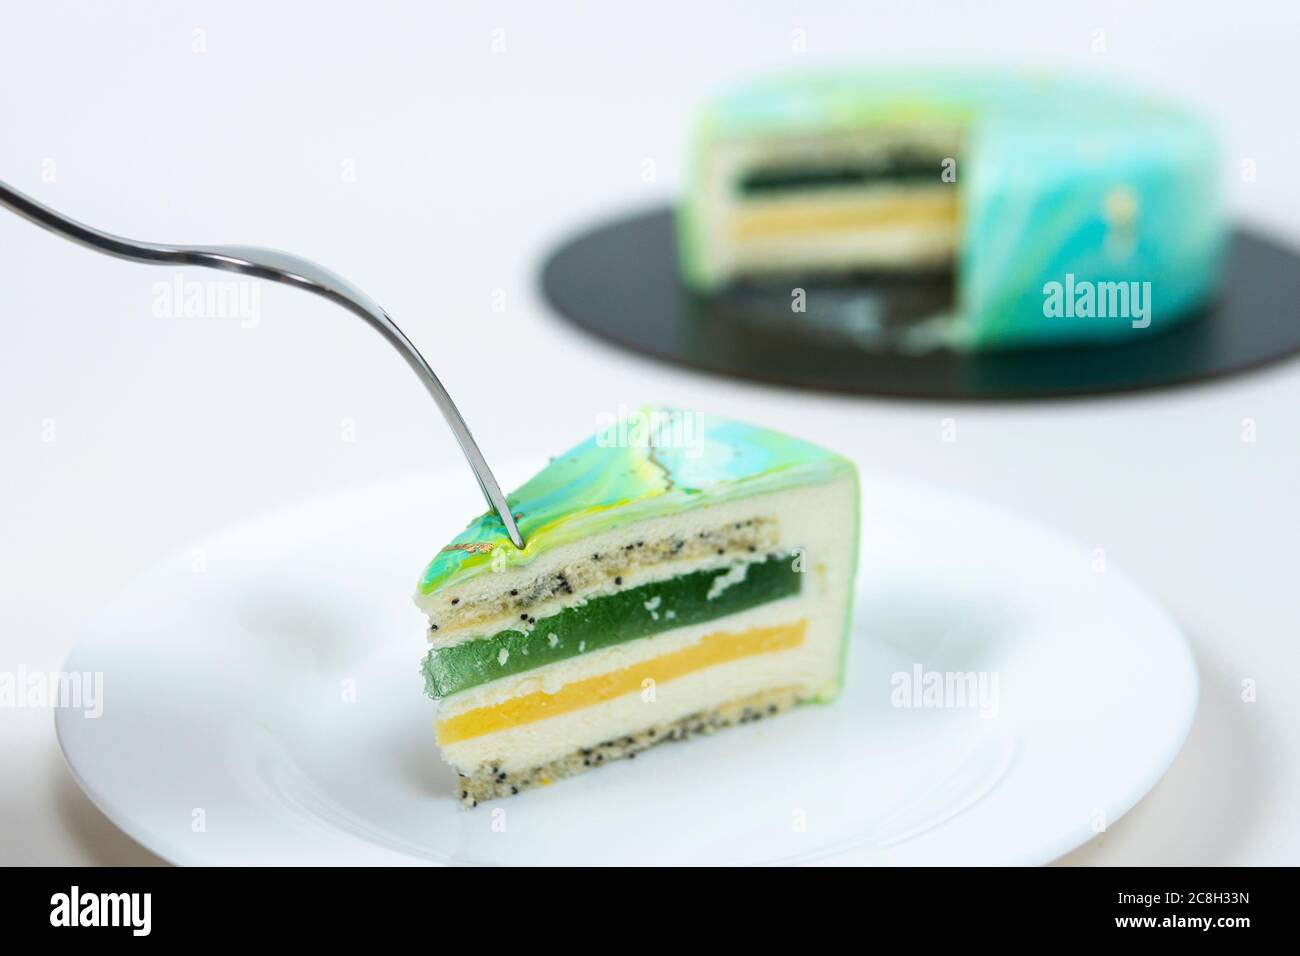 Nahaufnahme Essen Scheibe Mousse Kuchen bedeckt blau und grün Spiegelglasur. Französisches Dessert. Gefrorener Spiegel Sahnehäubchen auf dem Kuchen. Backen und Süßwaren Co Stockfoto